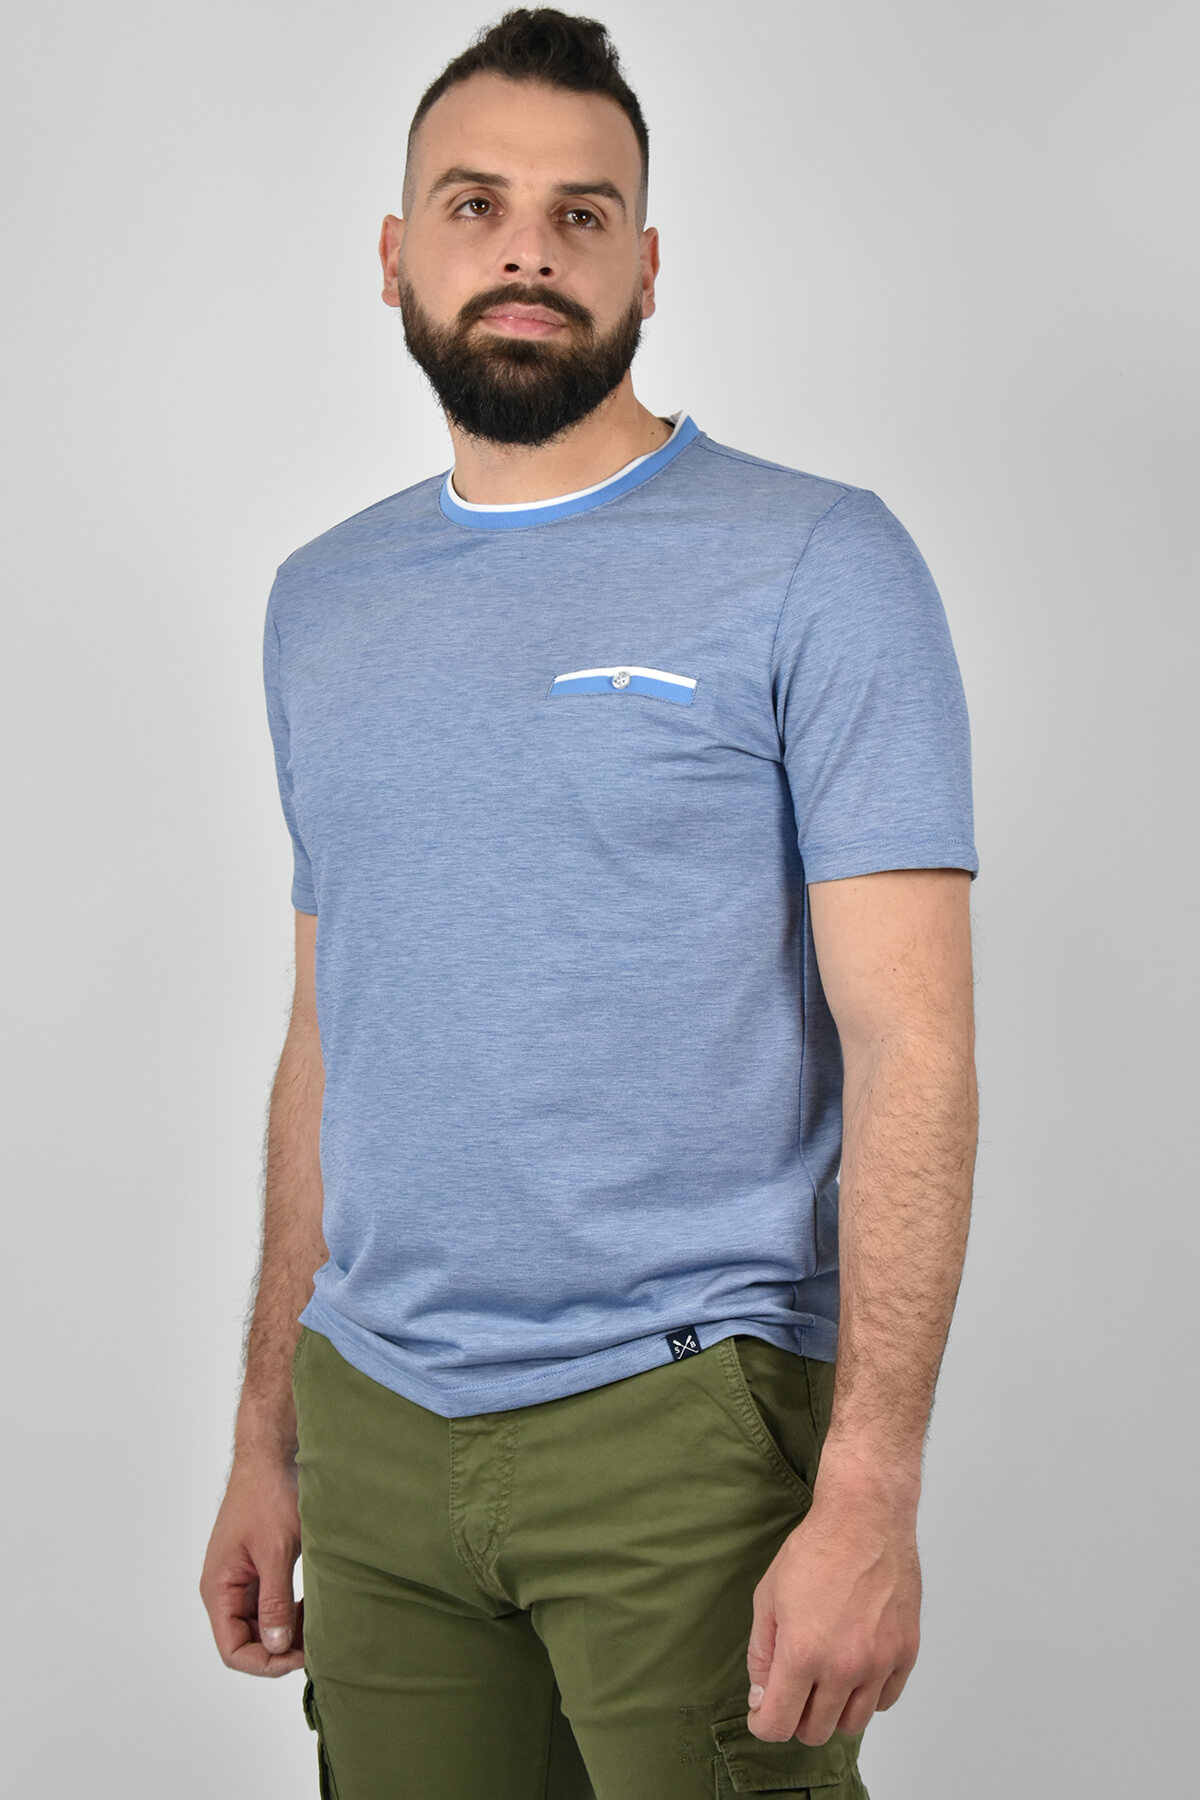 Shutton Blue T-shirt Με Δίχρωμη Τσέπη